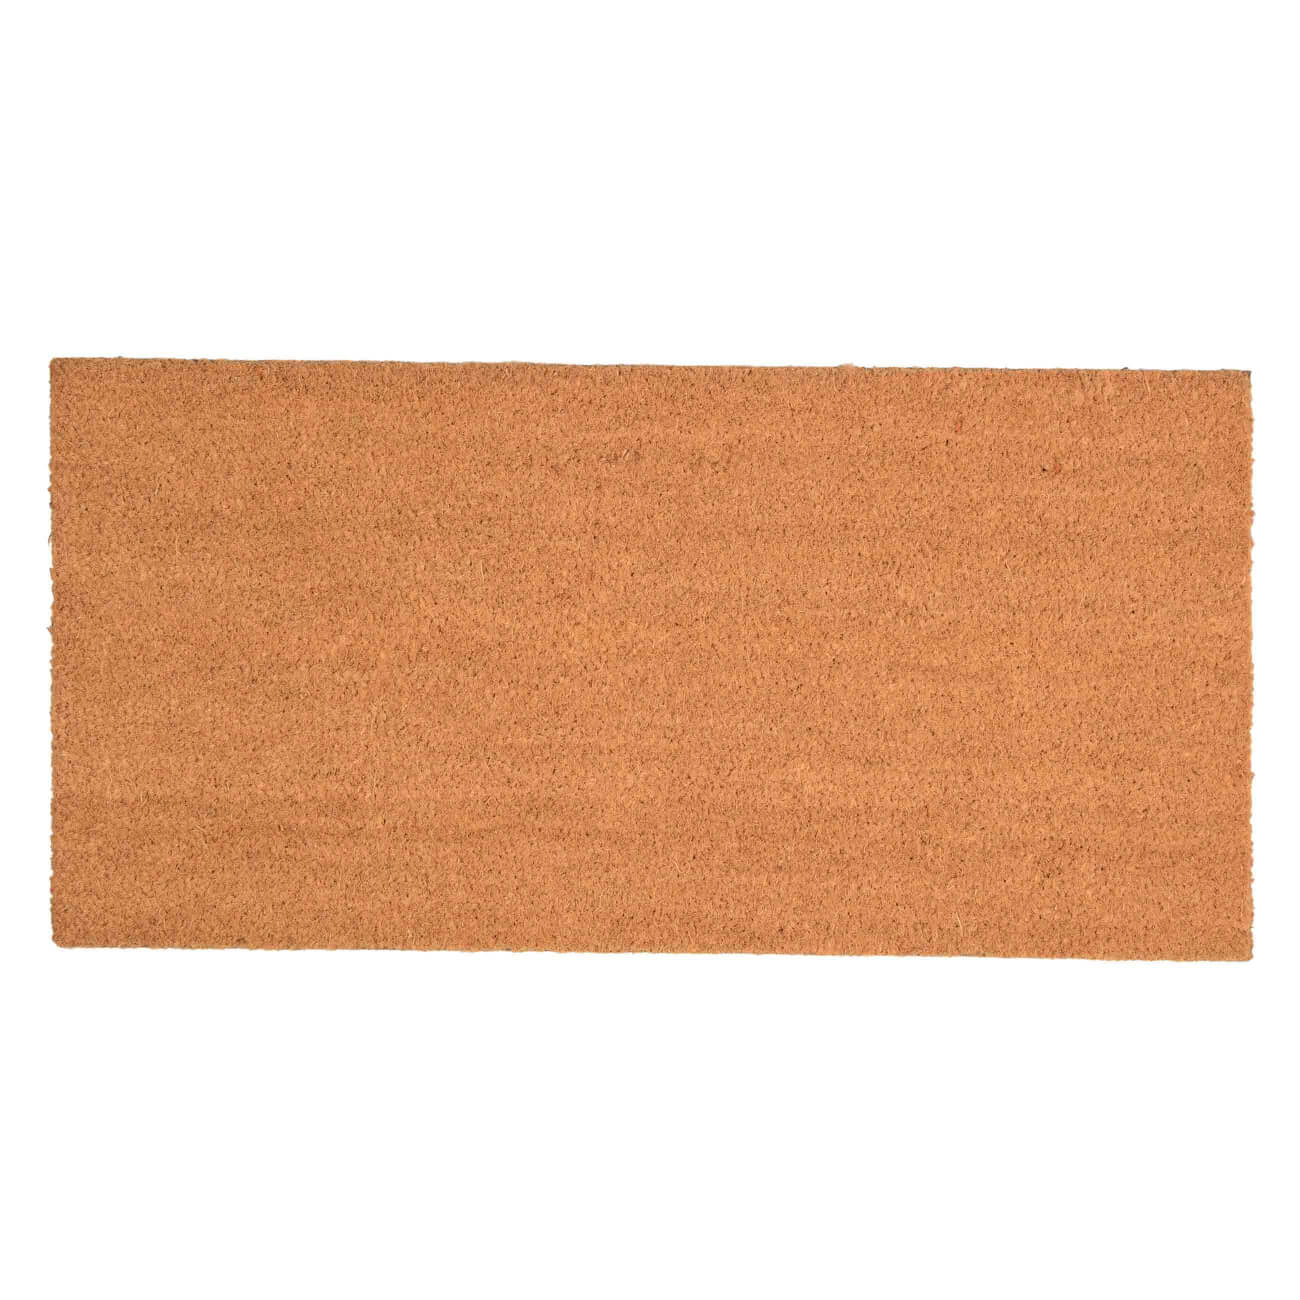 Коврик придверный, 40х80 см, кокос/ПВХ, коричневый, Basic изображение № 1